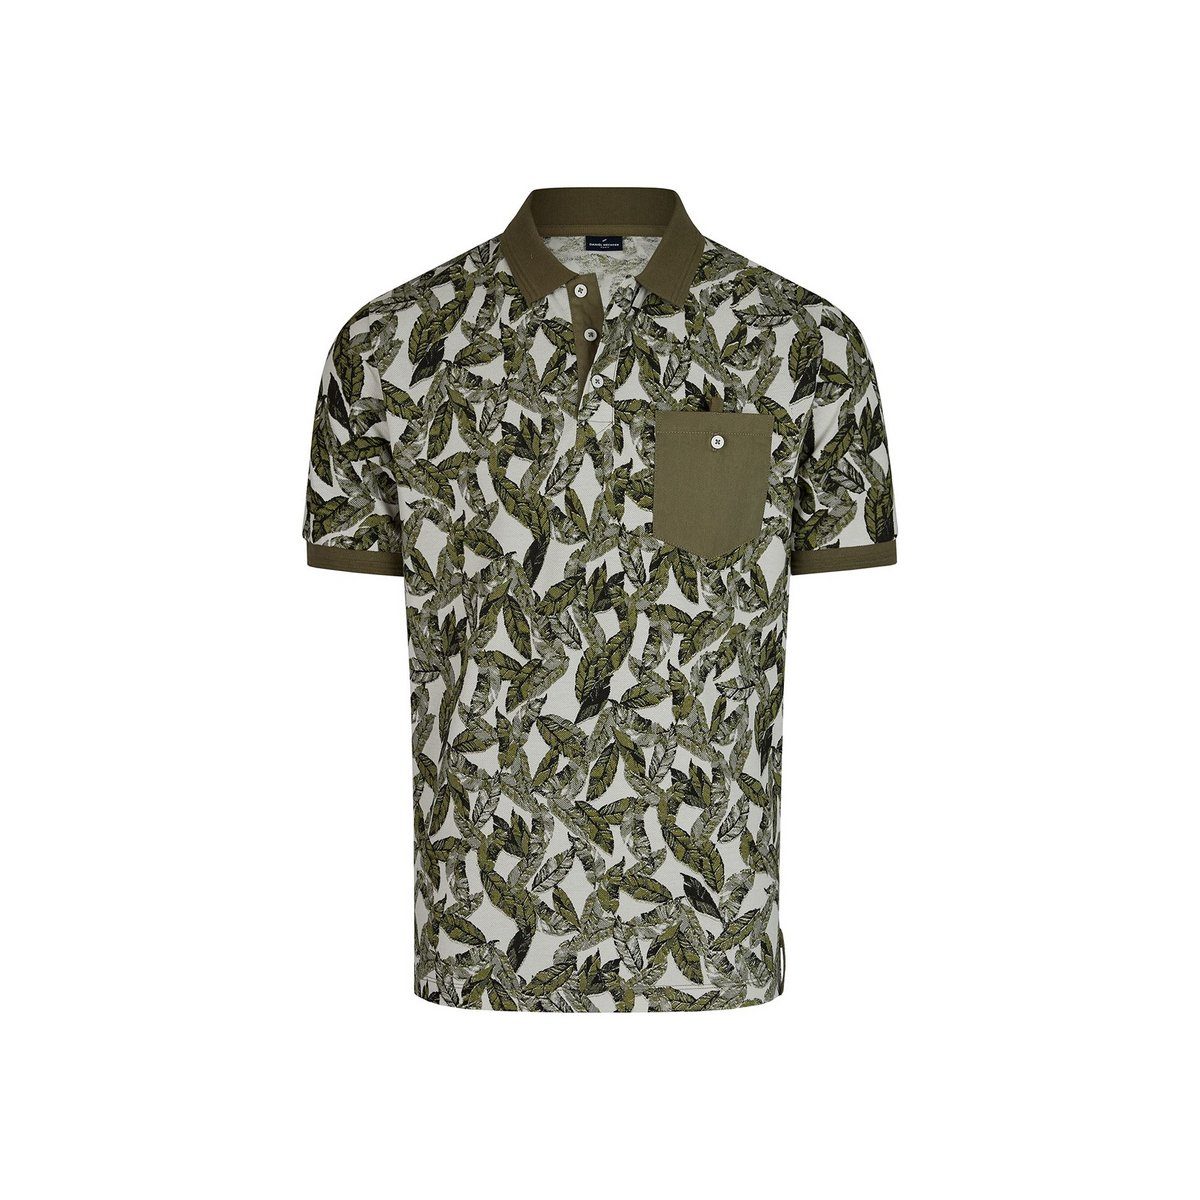 HECHTER PARIS Poloshirt mit Blattprint, Casual Polo Shirt mit Allover Druck